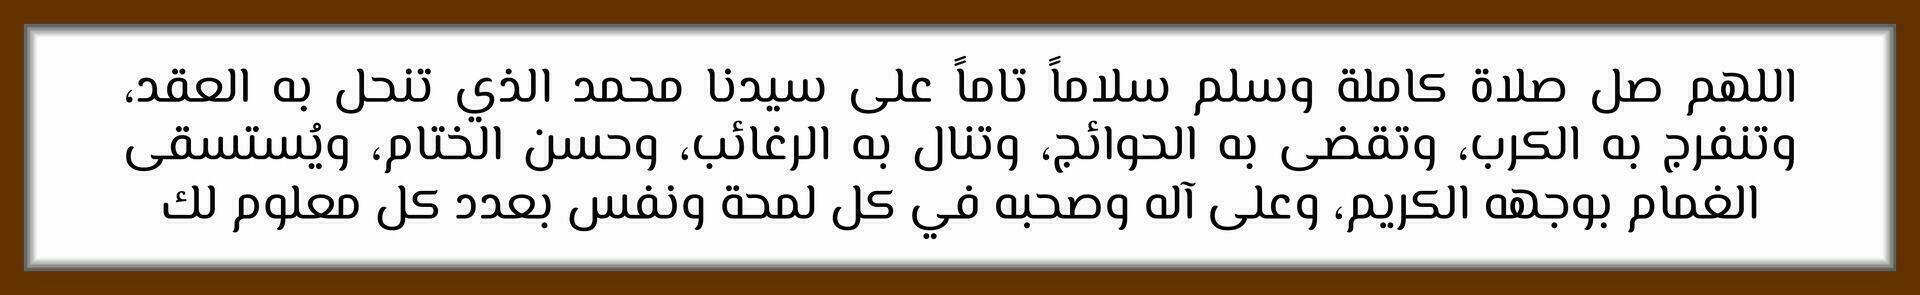 Arabisch Kalligraphie solawat Prophet Muhammad Schalawat Nariyah welche meint Ö Allah, verleihen perfekt Segen und verleihen voll Segen vektor